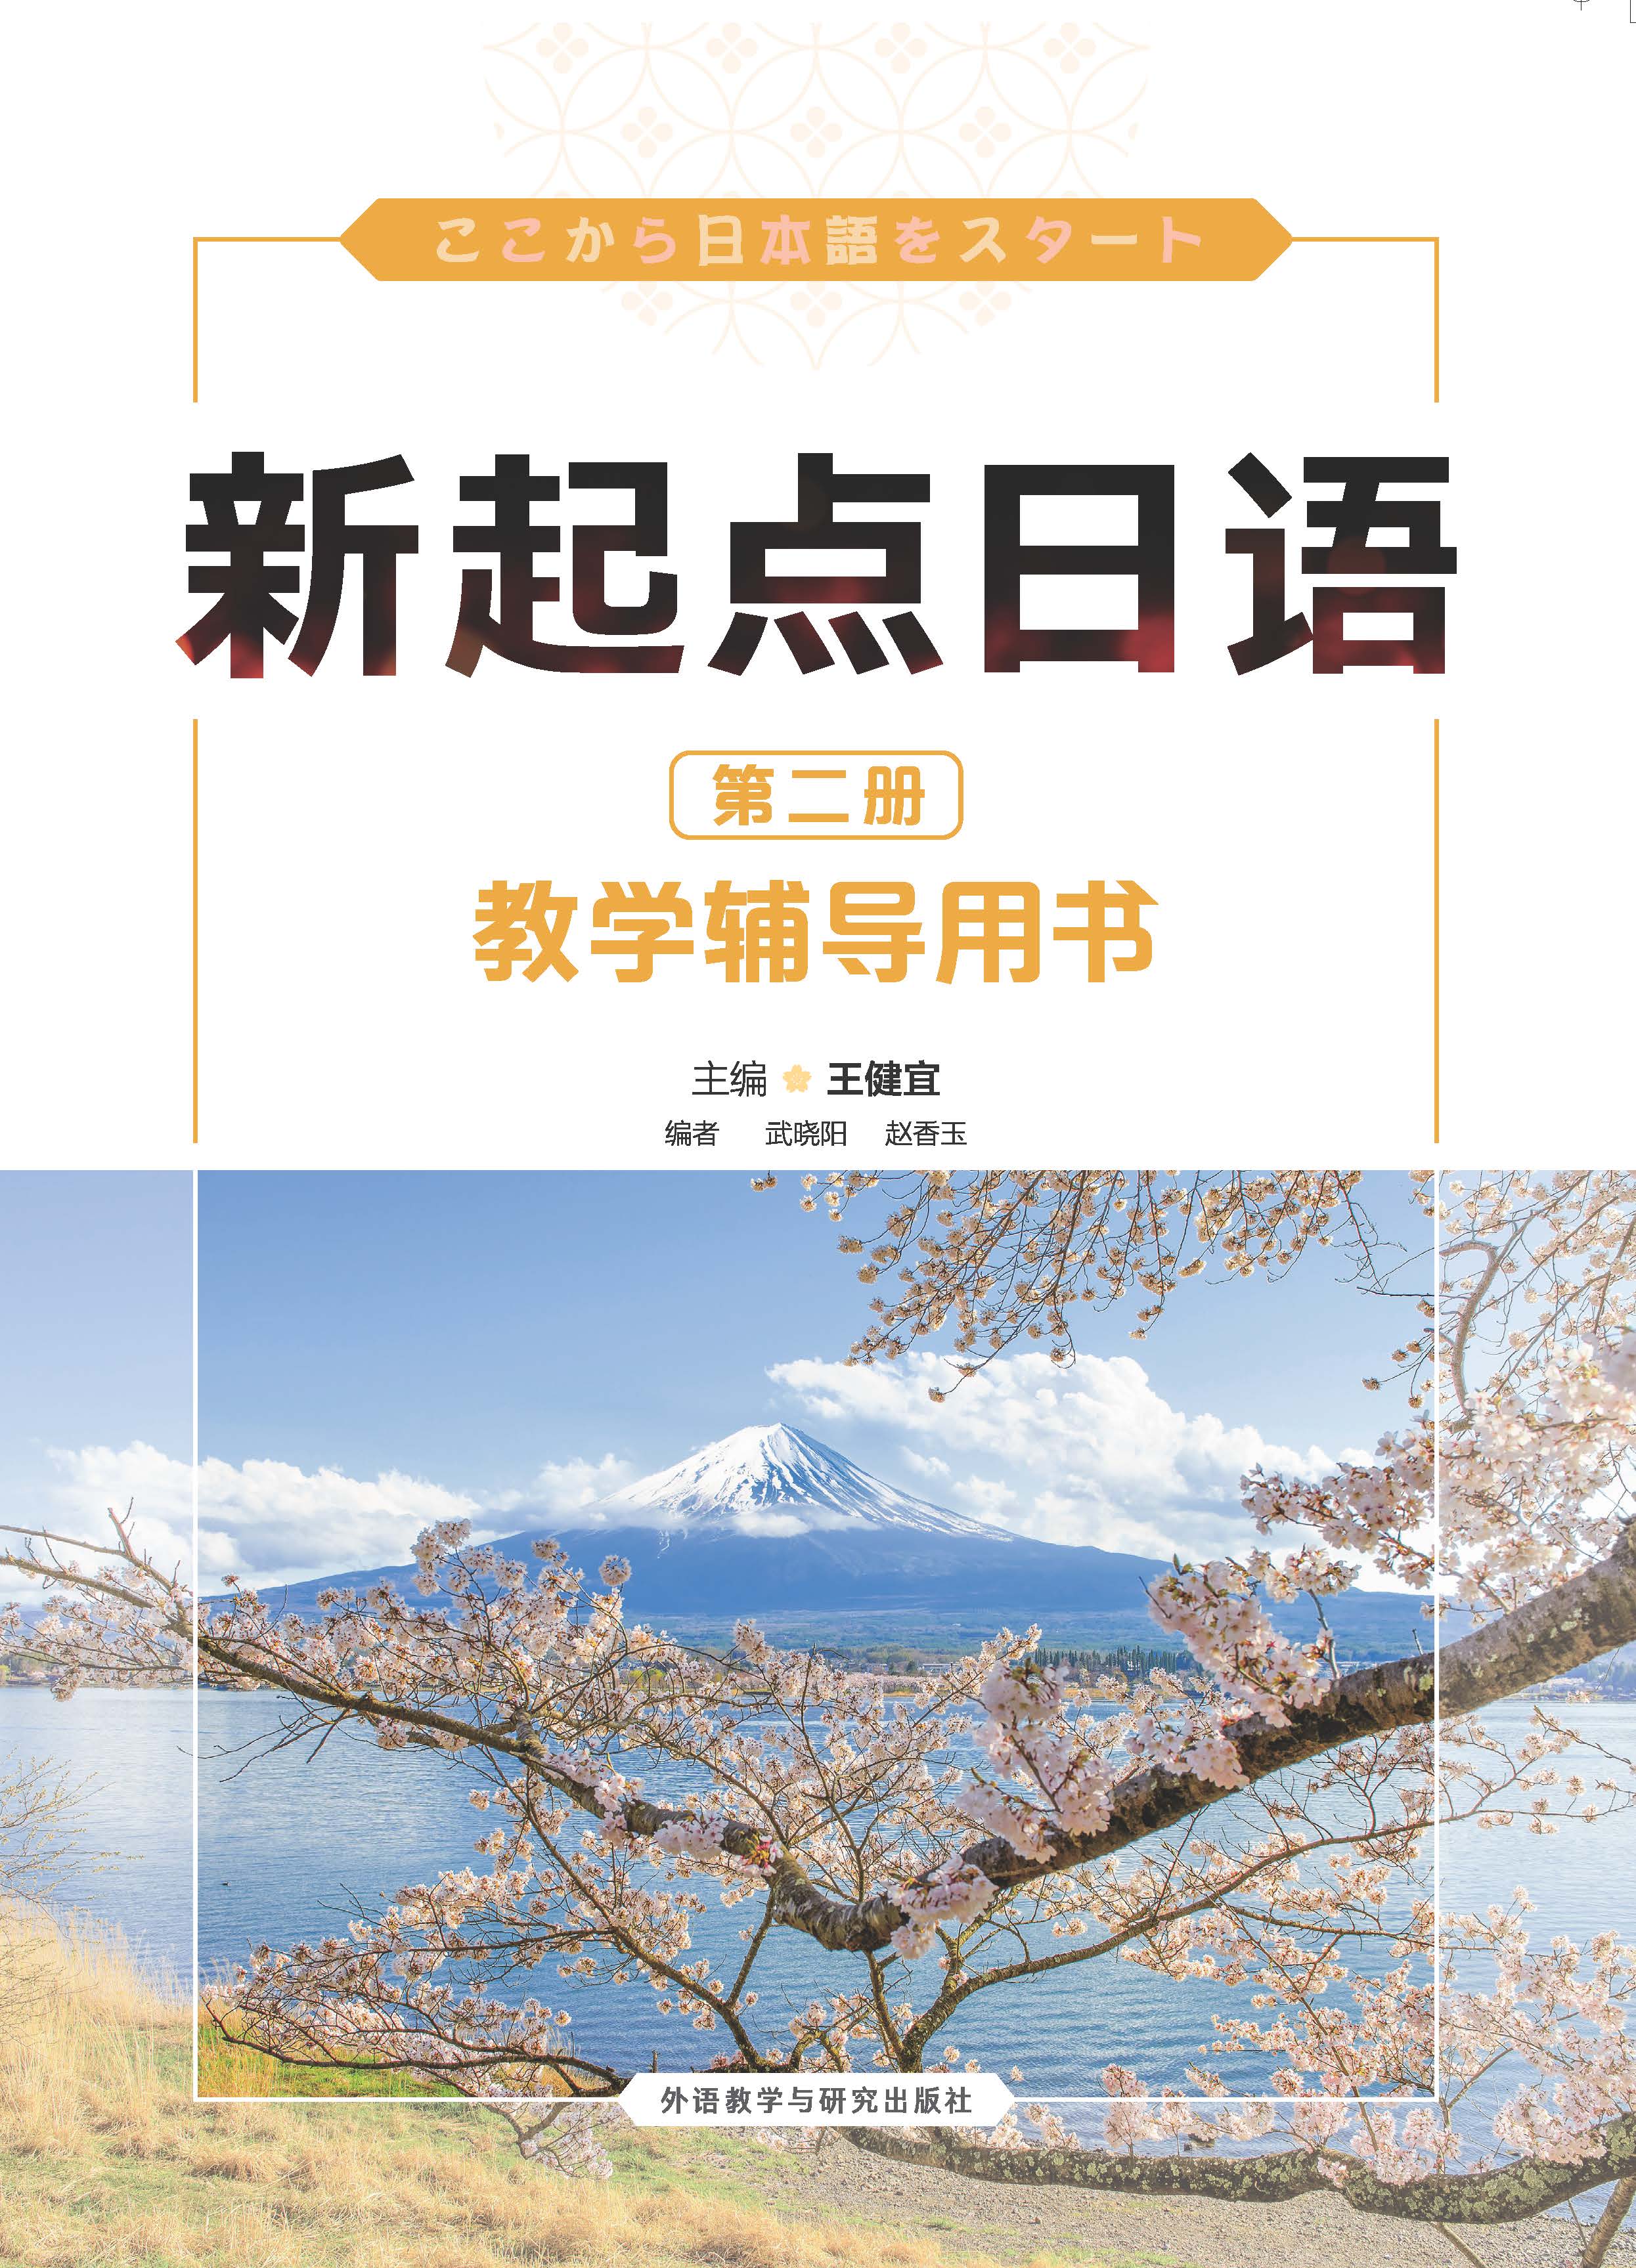 新起点日语(2)(教学辅导用书)